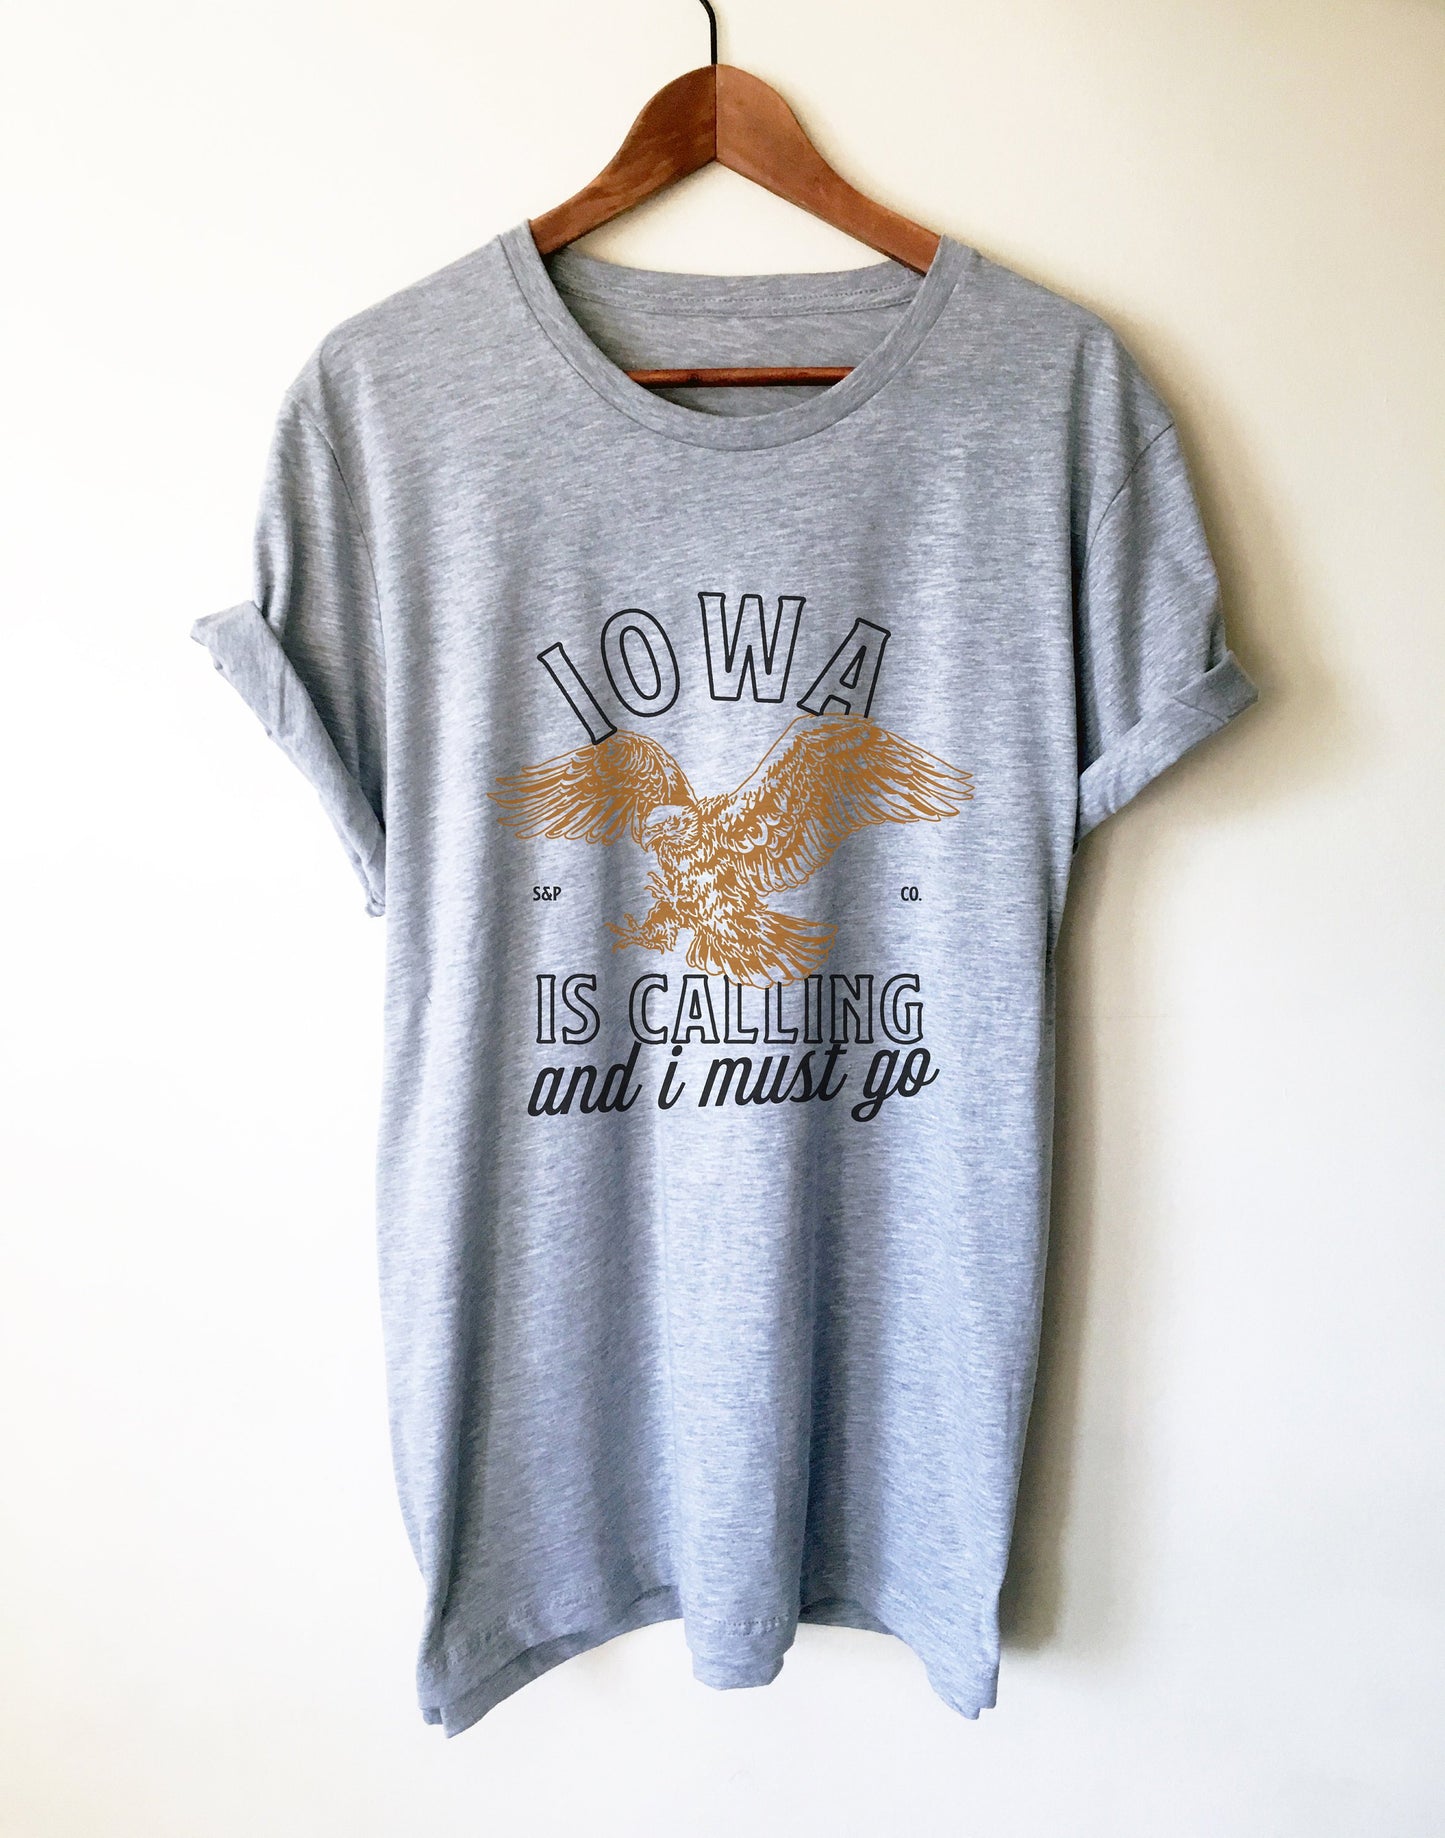 Iowa Is Calling And I Must Go Unisex Shirt - Iowa Shirt, Iowa Gift, State Shirt, Iowa Pride, Iowa State Shirt, Iowa Home Shirt